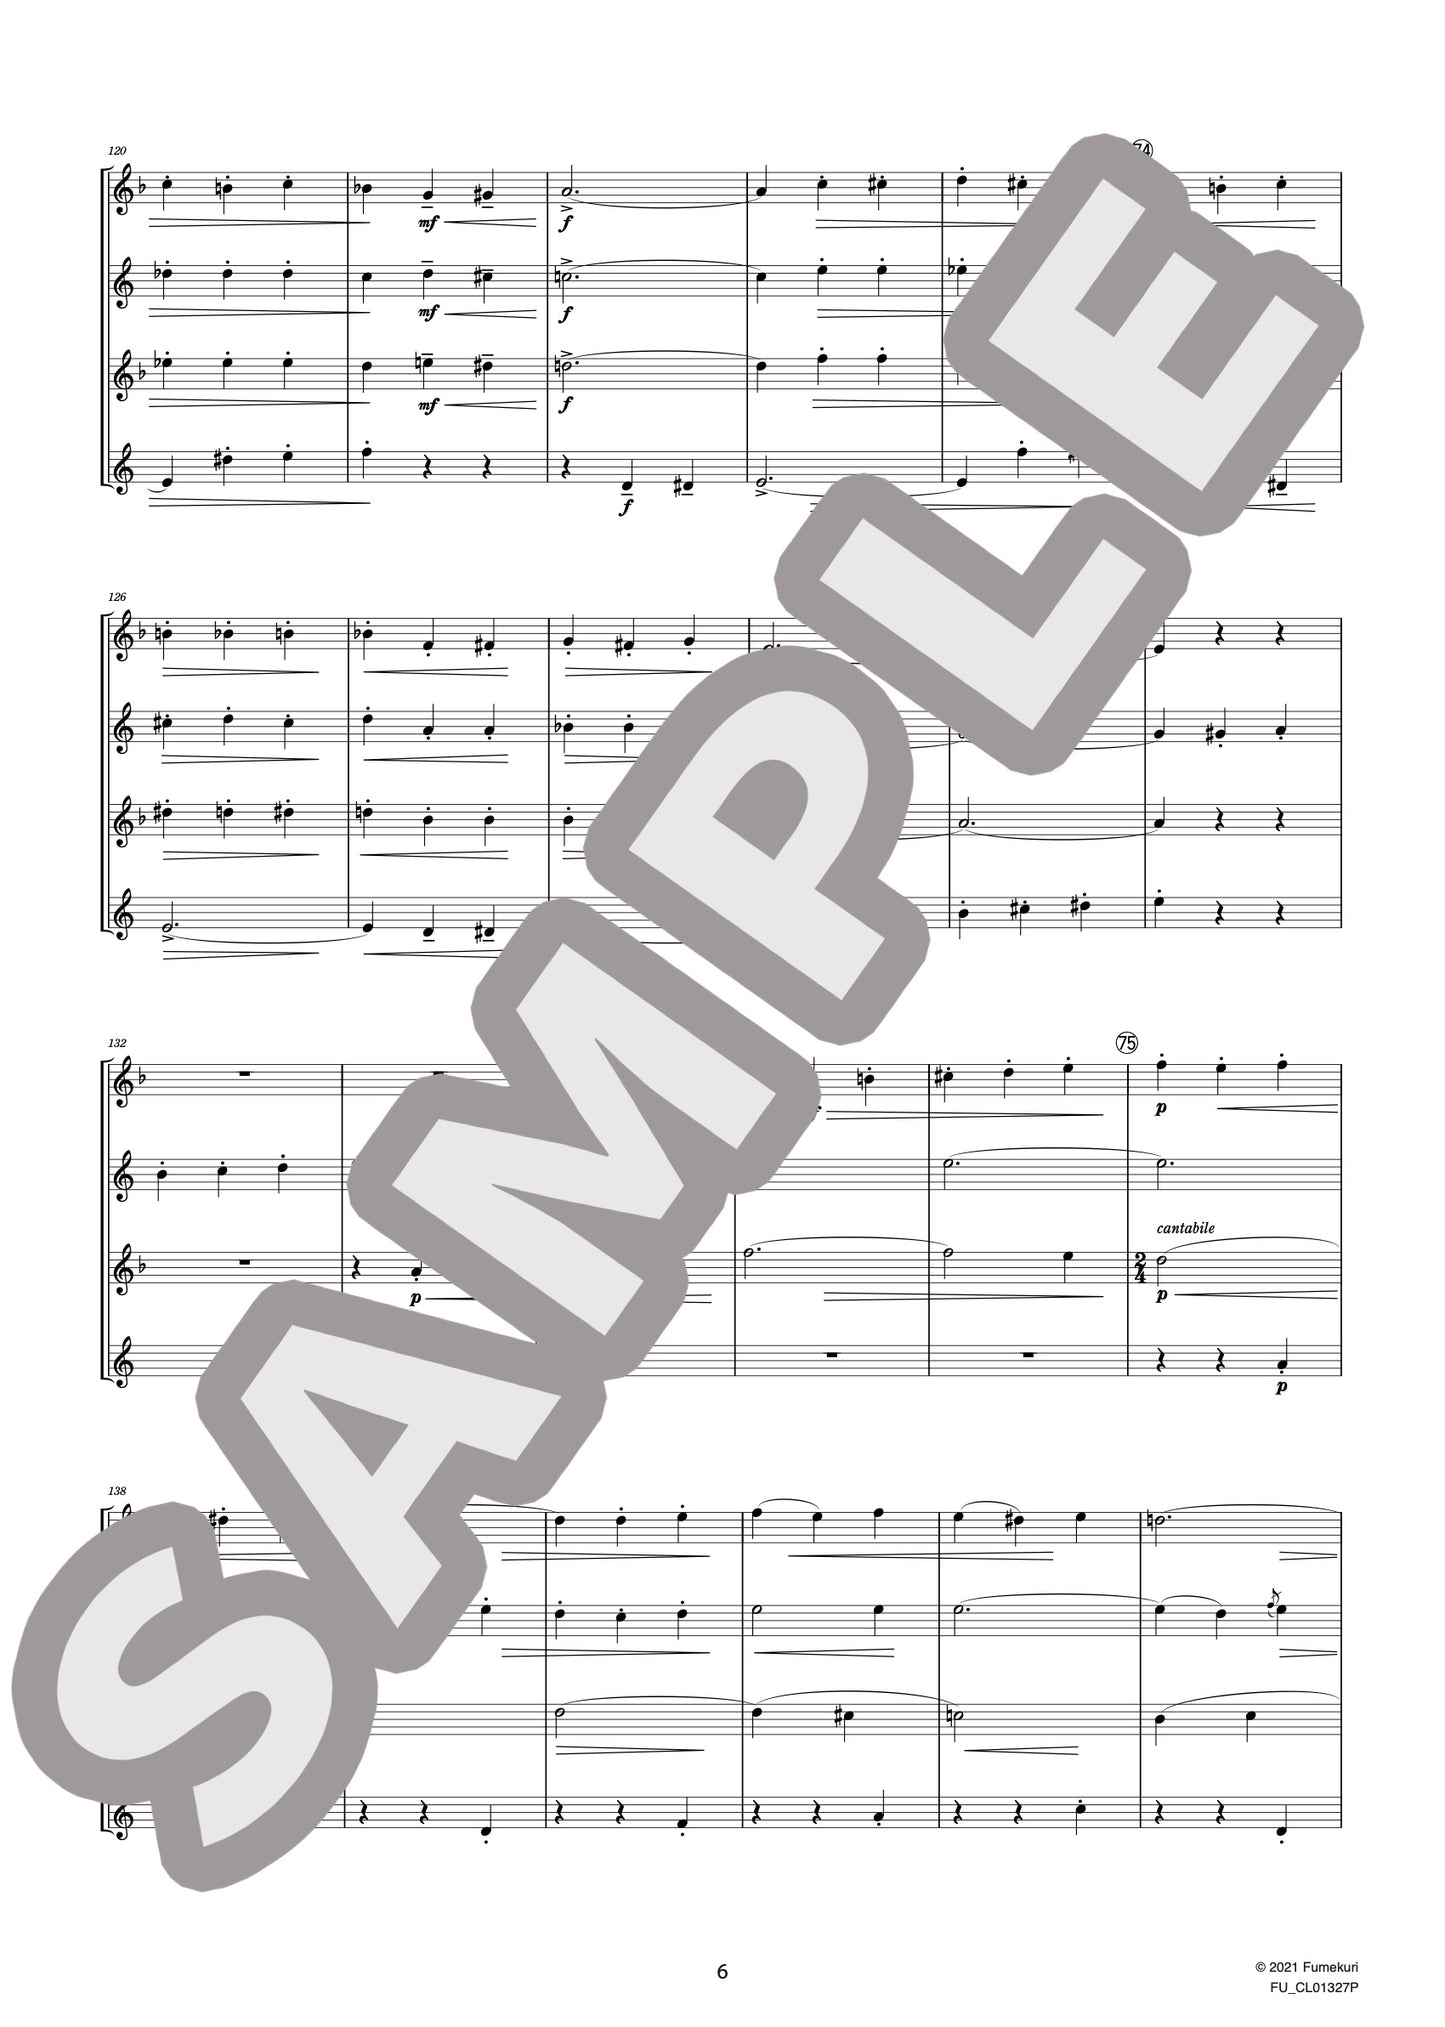 サクソフォン四重奏曲 変ロ長調 作品109 II. Canzona variée “Variation V Scherzo”（GLASUNOW) / クラシック・オリジナル楽曲【中上級】